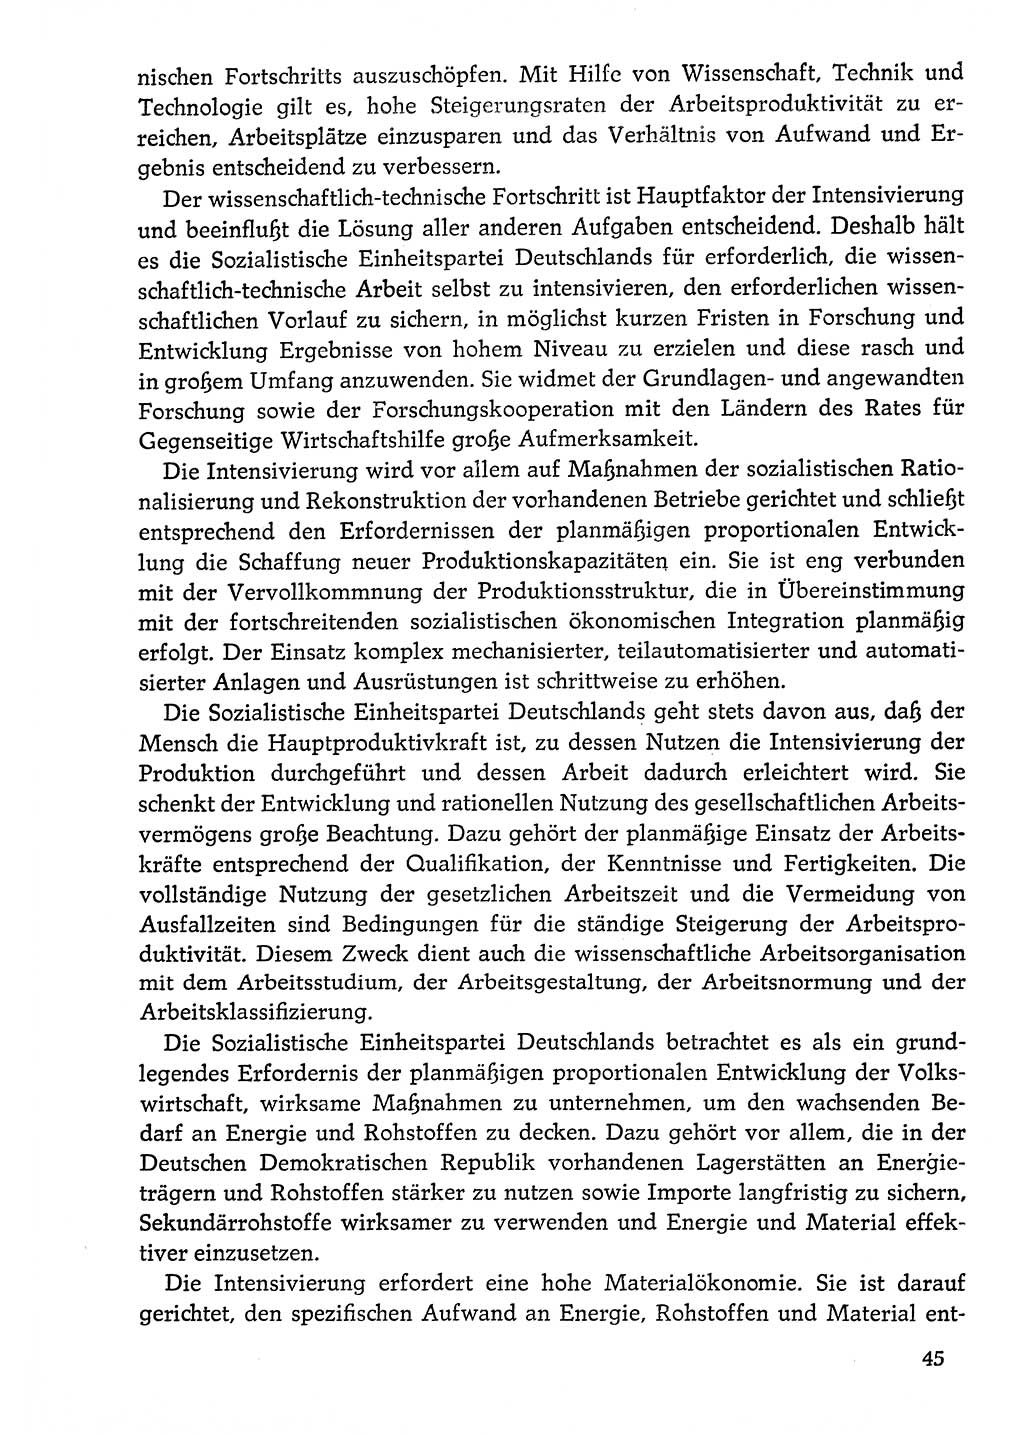 Dokumente der Sozialistischen Einheitspartei Deutschlands (SED) [Deutsche Demokratische Republik (DDR)] 1976-1977, Seite 45 (Dok. SED DDR 1976-1977, S. 45)